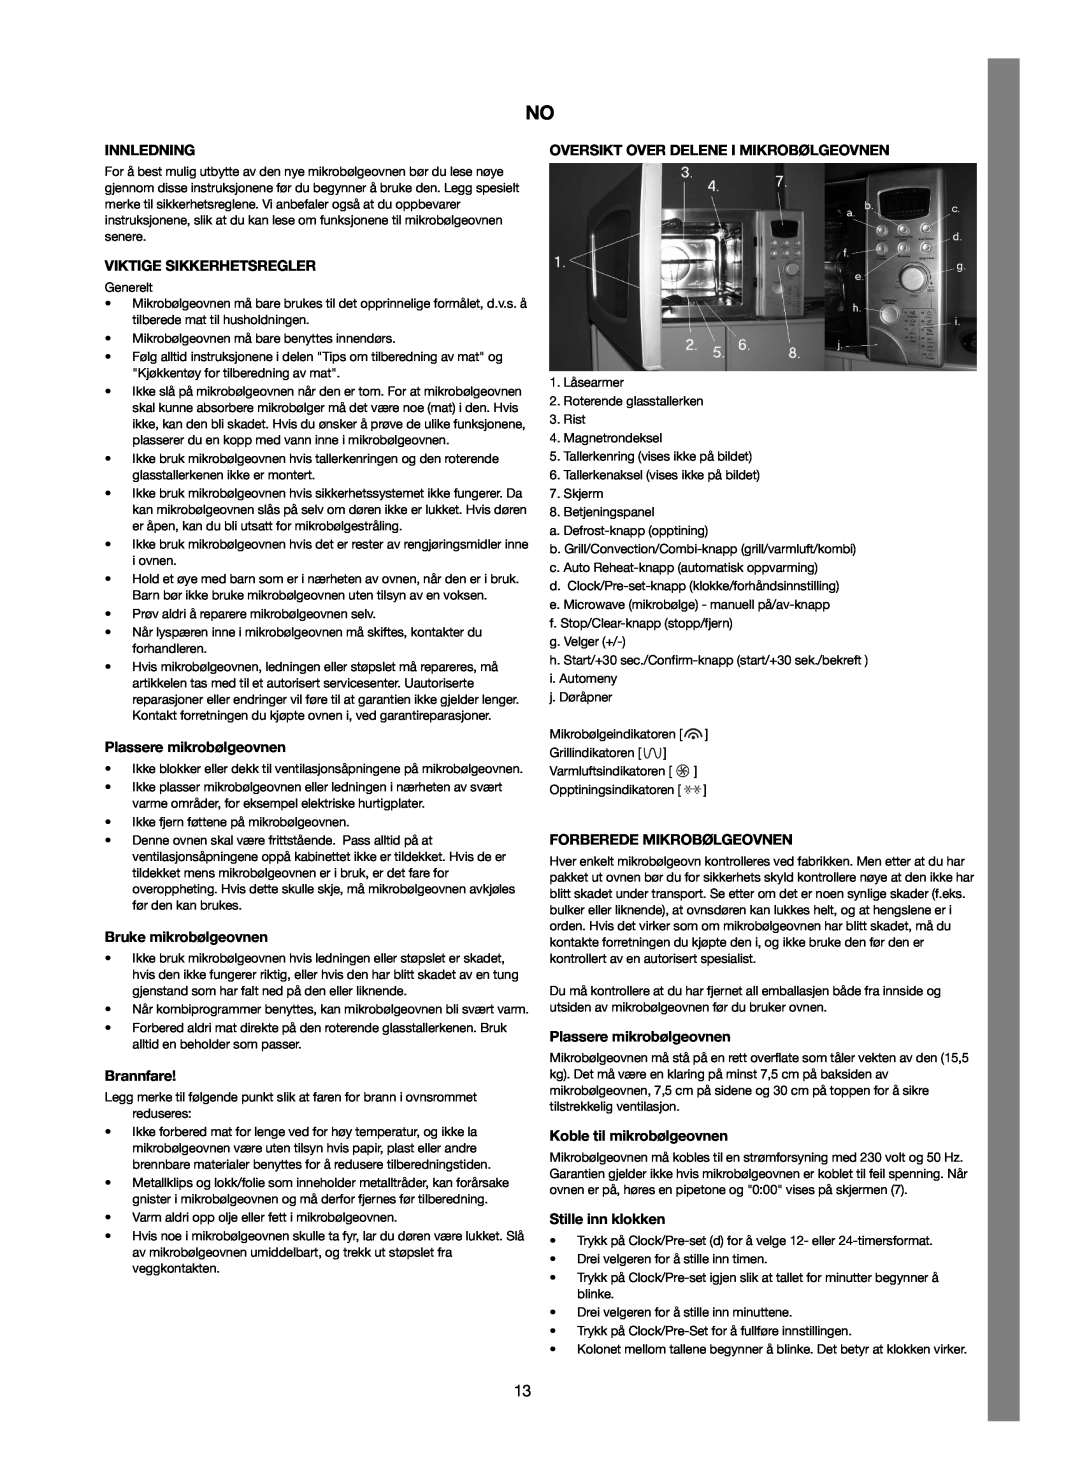 Melissa 253-012 manual Innledning, Viktige Sikkerhetsregler, Plassere mikrobølgeovnen, Bruke mikrobølgeovnen, Brannfare 